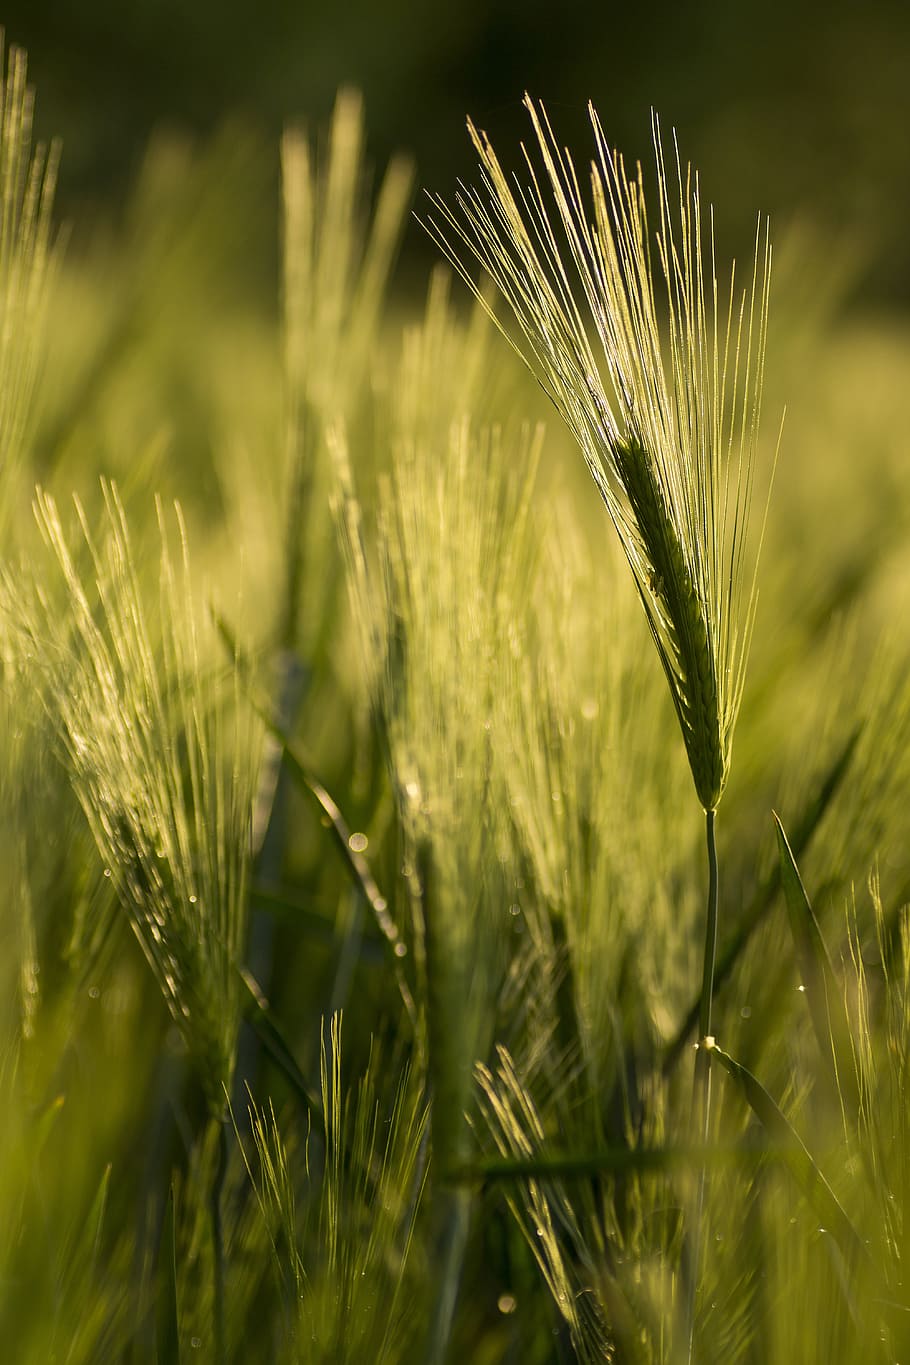 gandum, sereal, hijau, ekologis, ladang gandum, biji-bijian, ladang, ladang jagung, spike, garapan